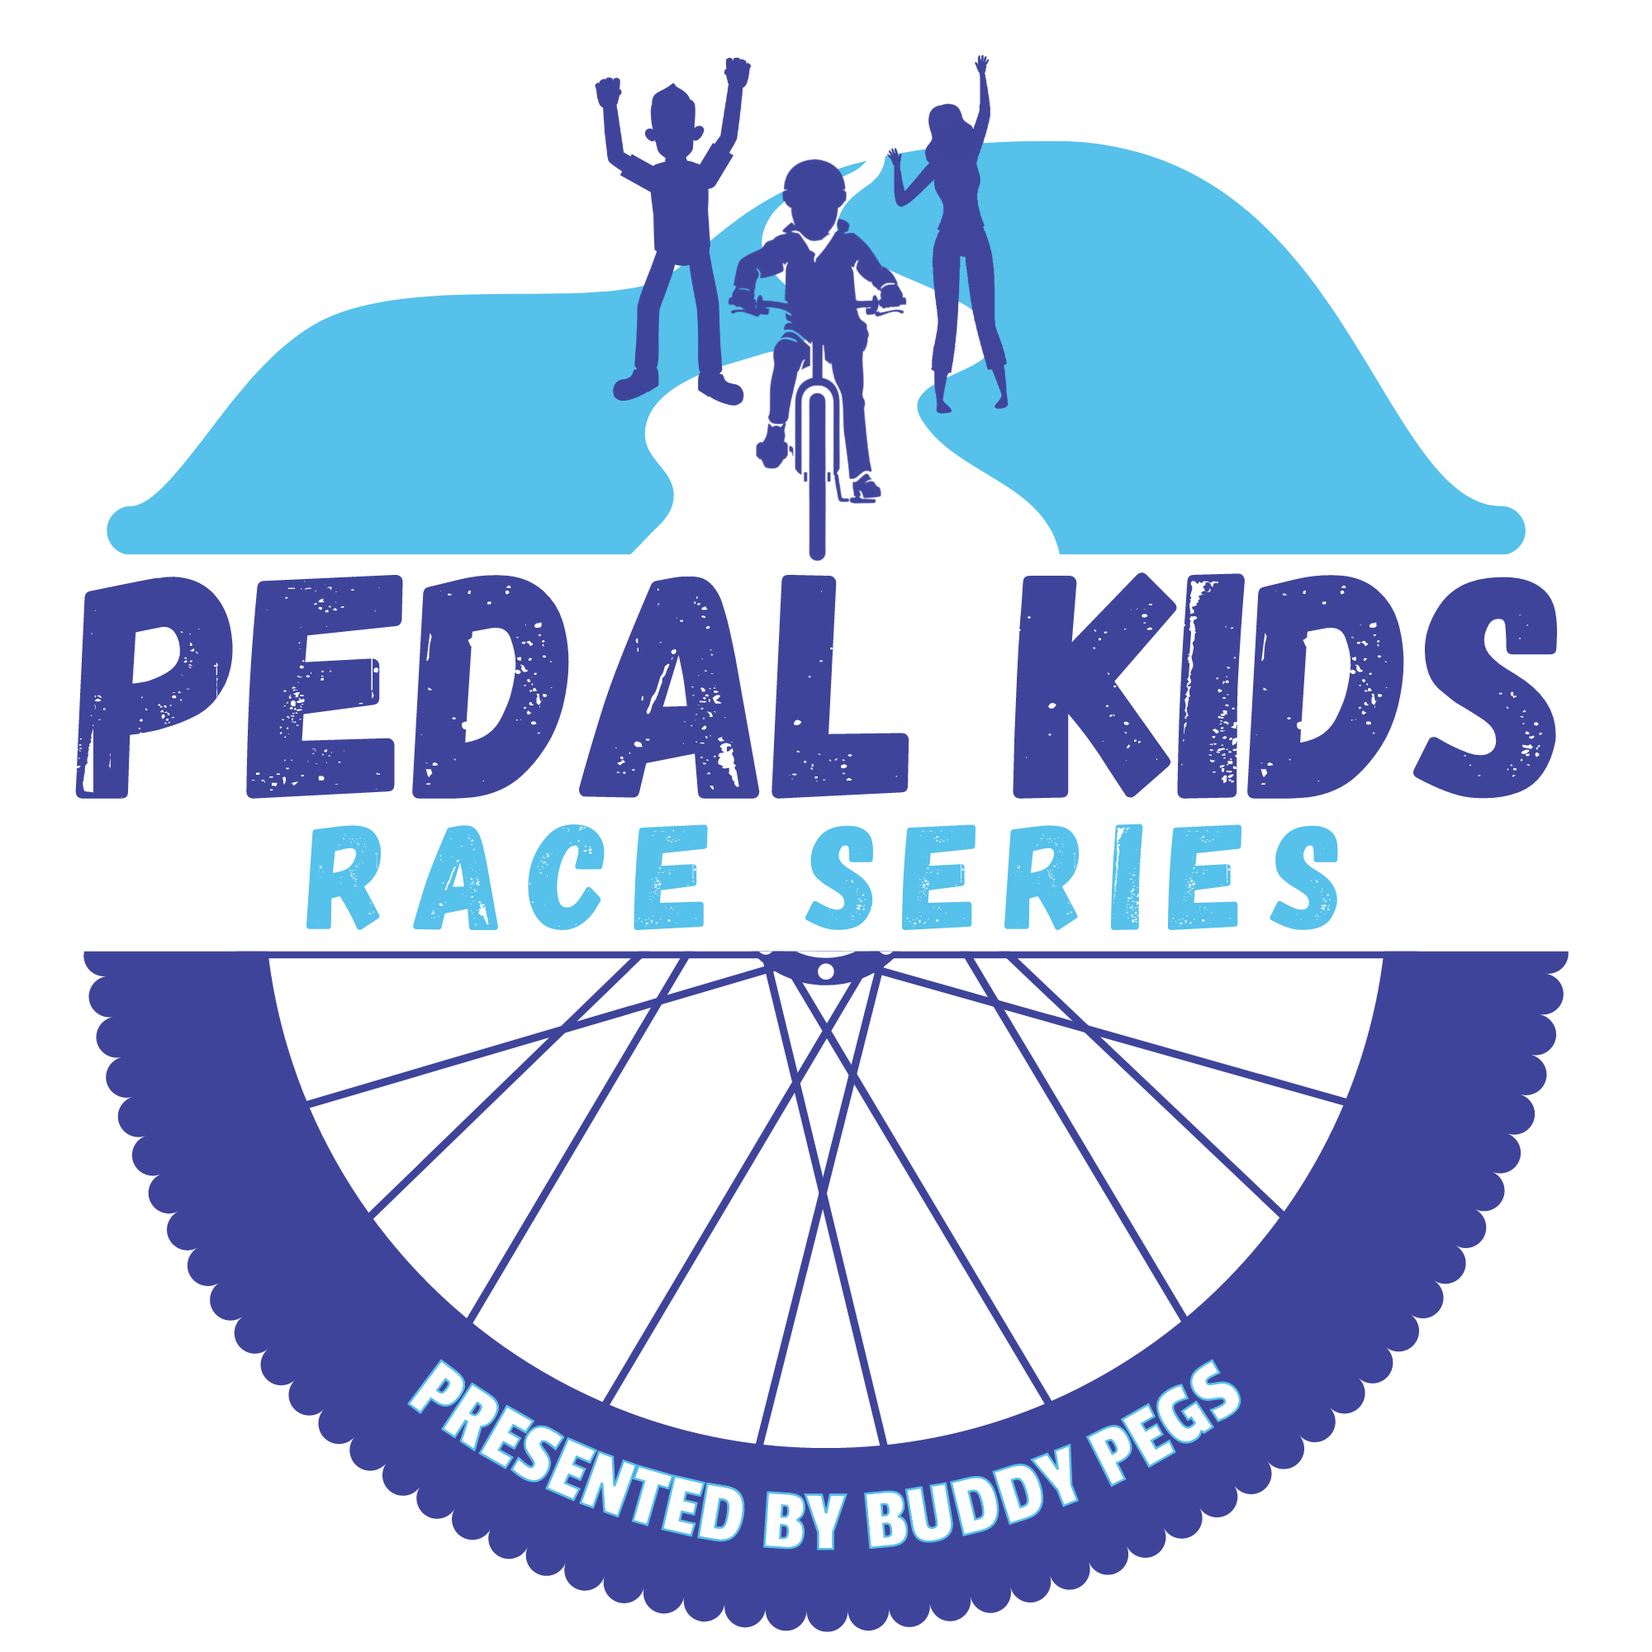 2021 Pedal Kids Race Series - NO GEARS (Single Speed)